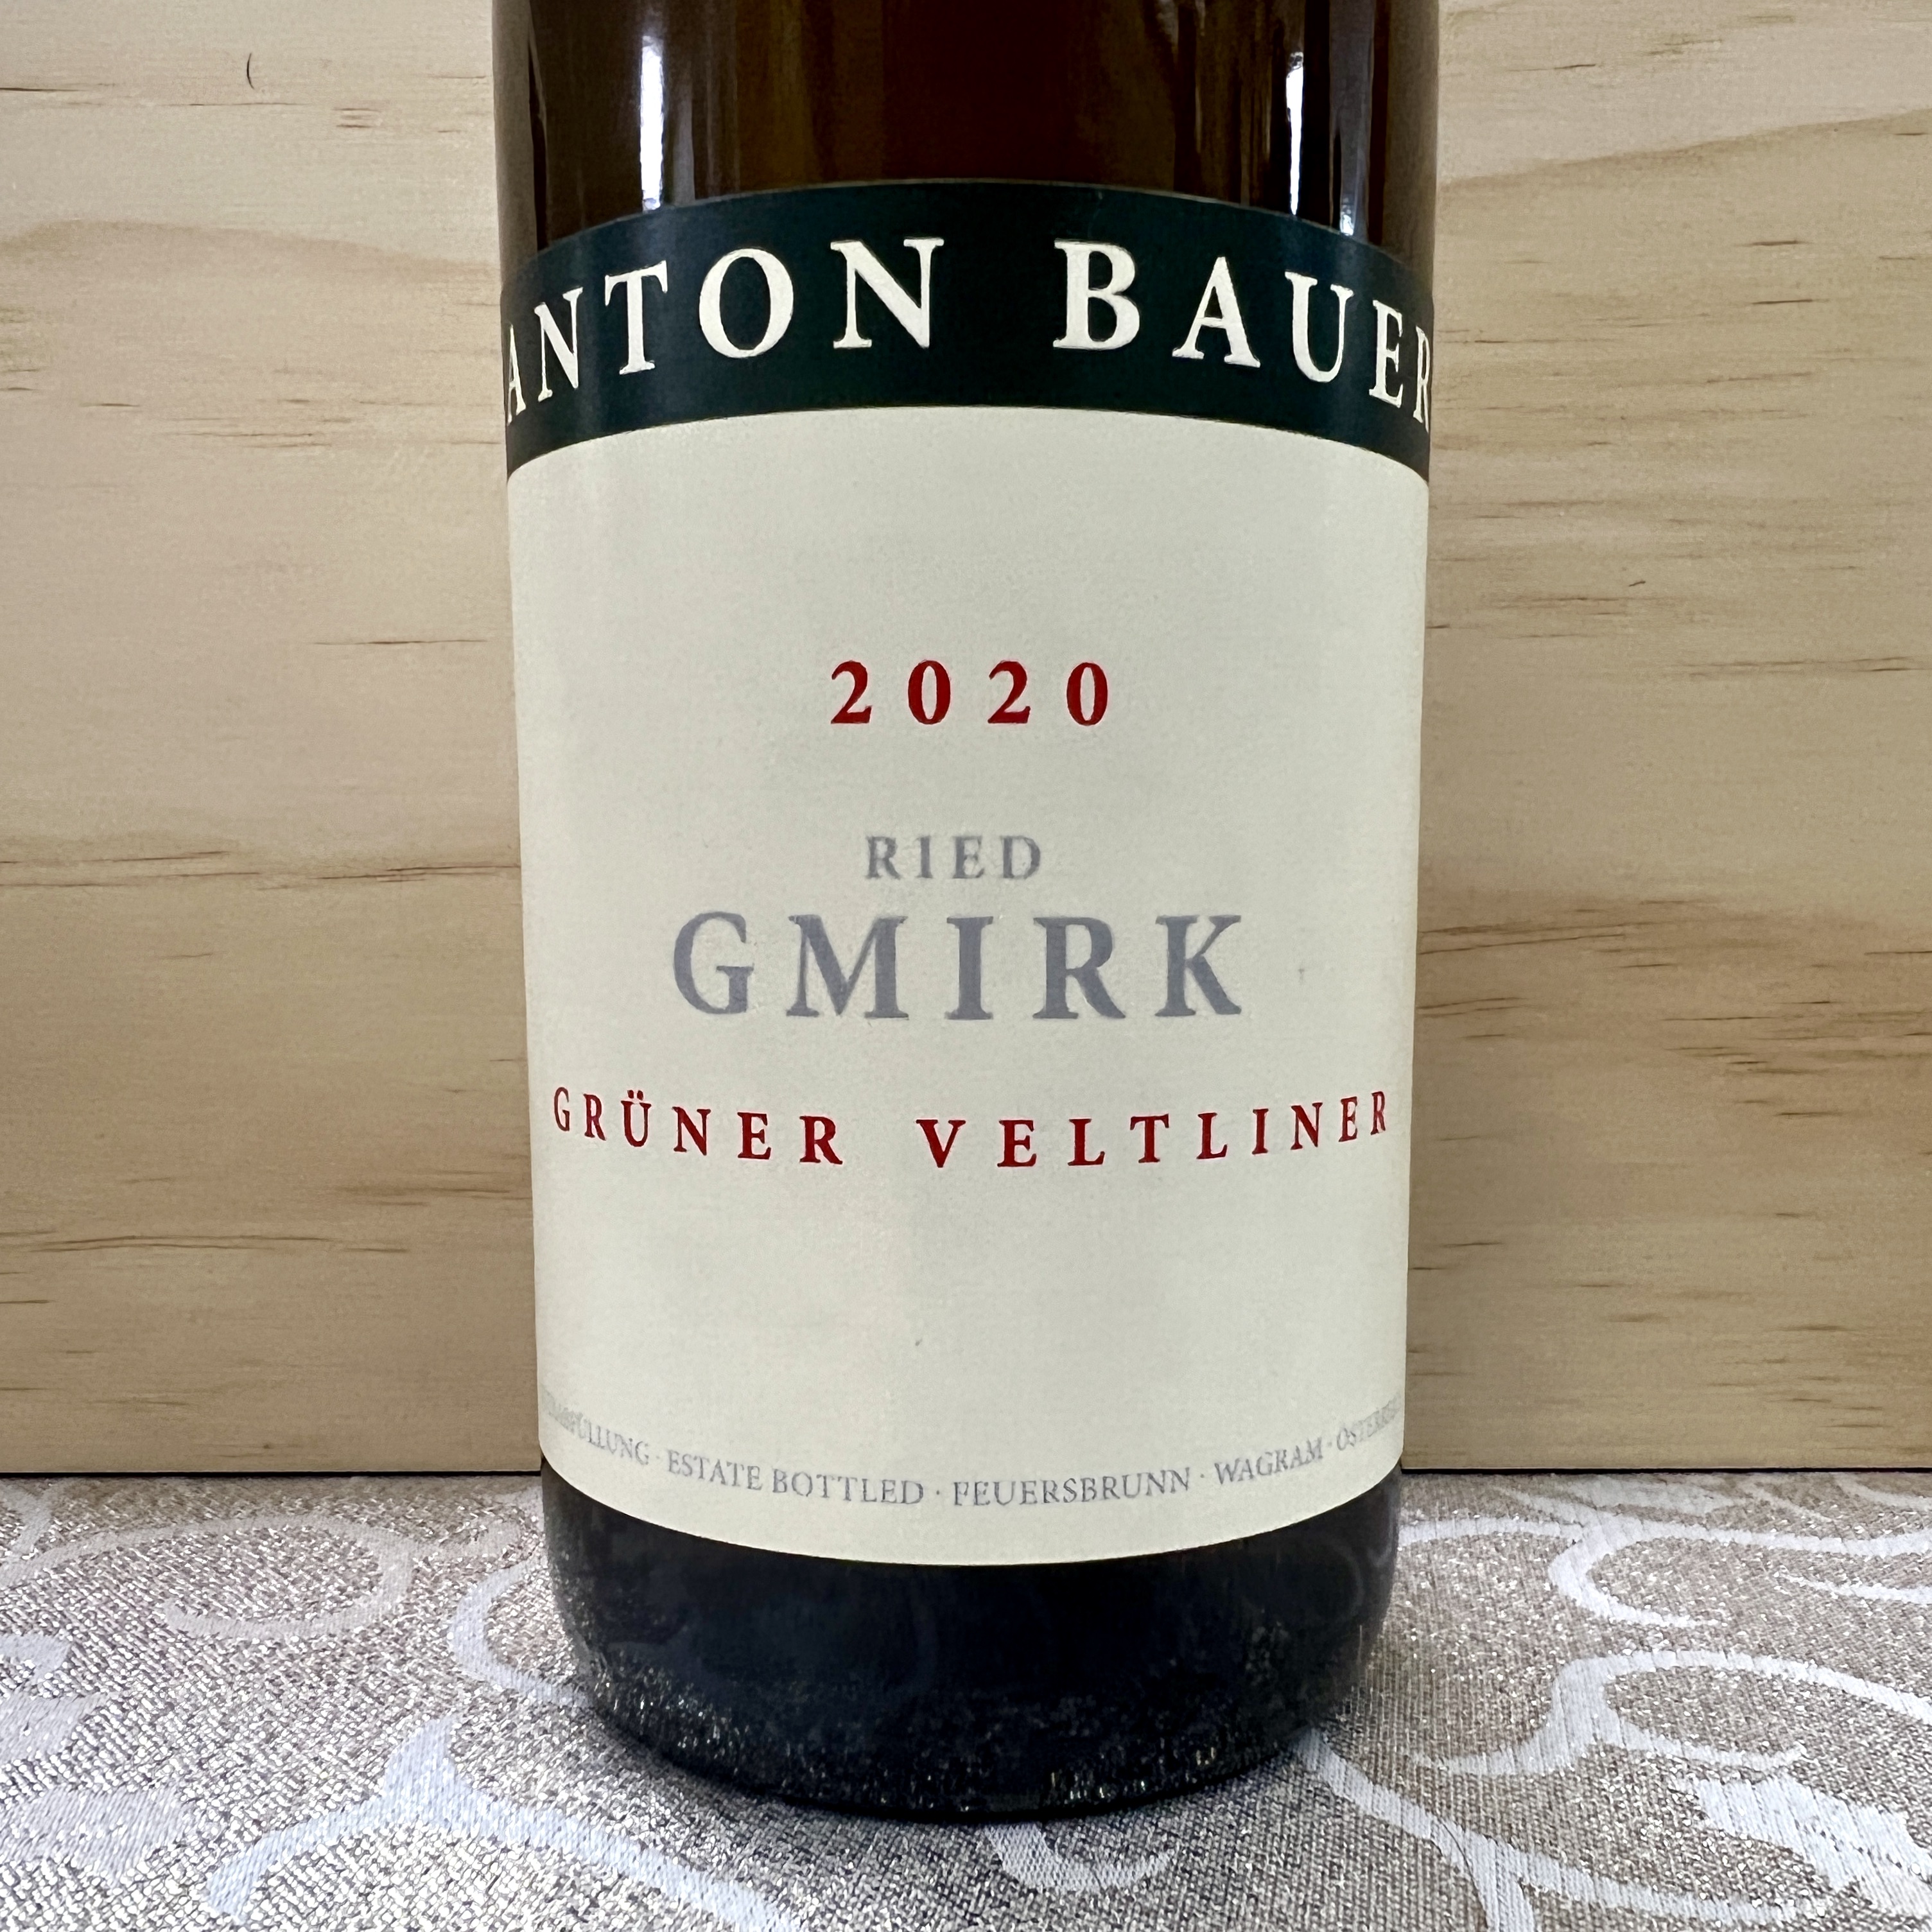 Anton Bauer Ried Gmirk Gruner Veltliner 2021